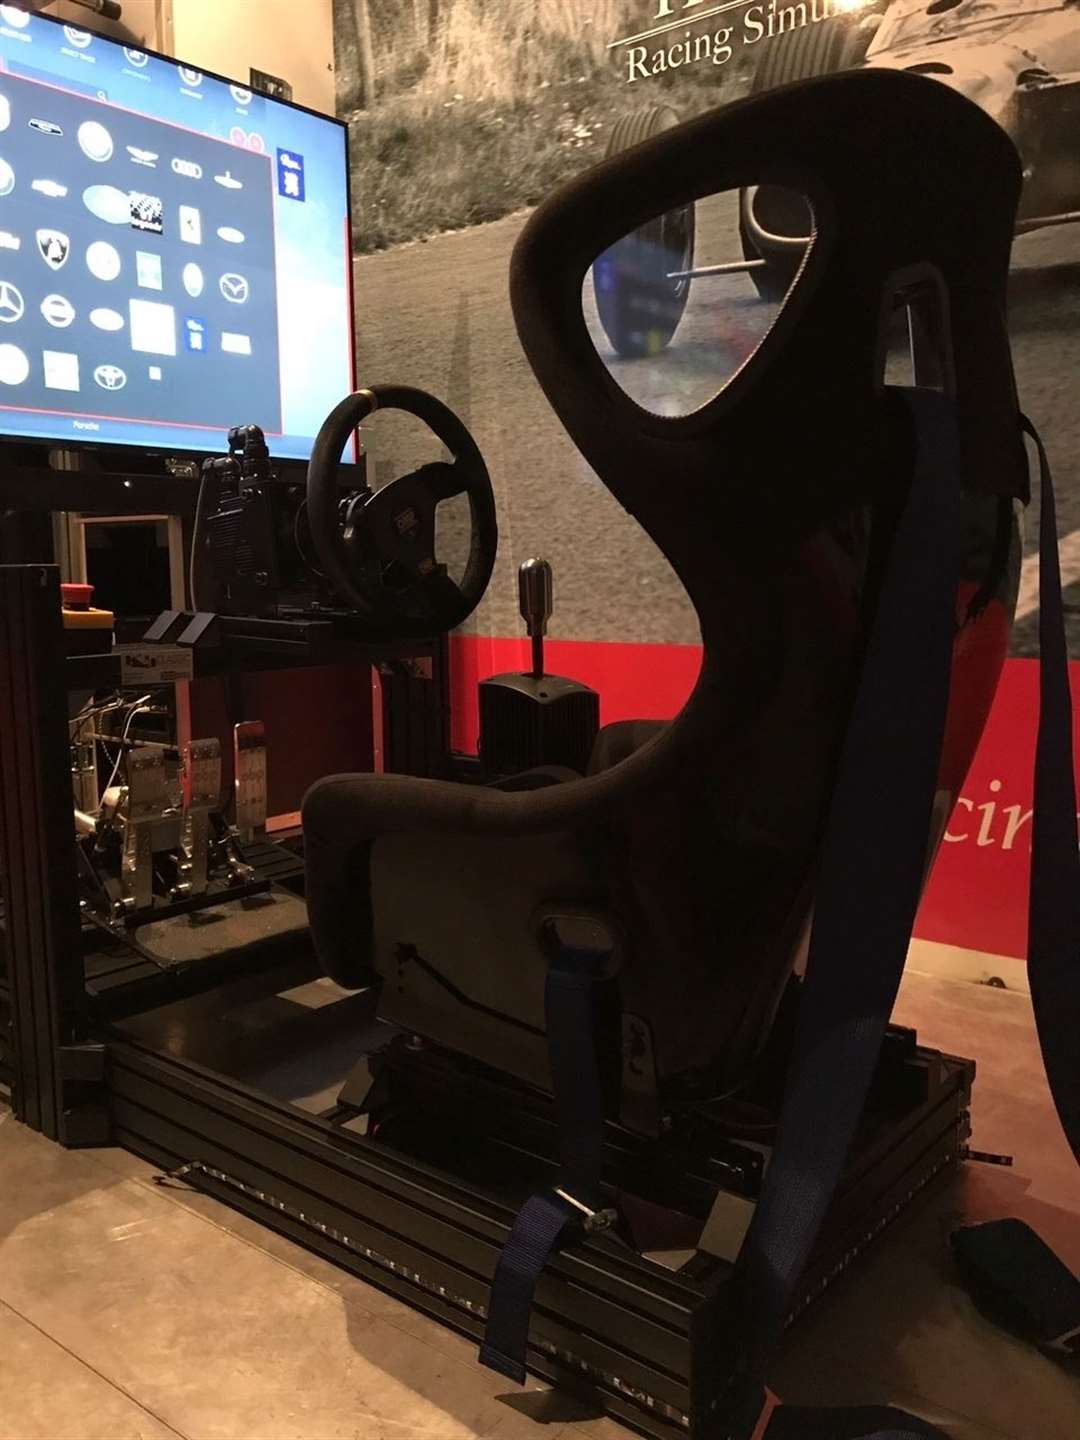 The racing simulator